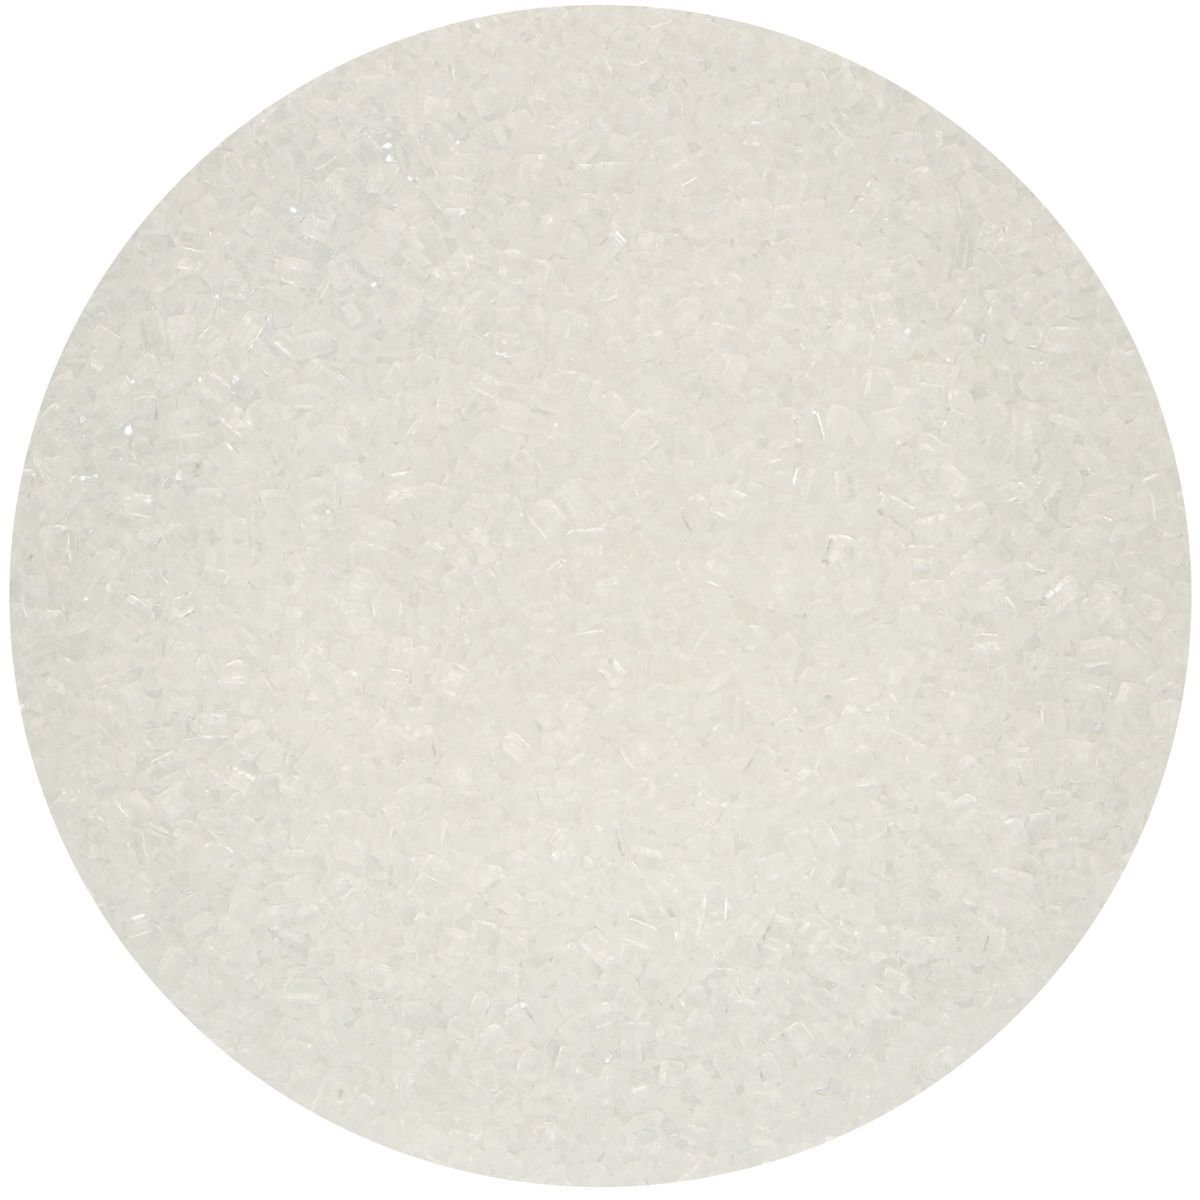 FunCakes Sugar Crystals -WHITE -Χρωματιστή Ζάχαρη σε μικρούς κρυστάλλους-Λευκή 80γρ